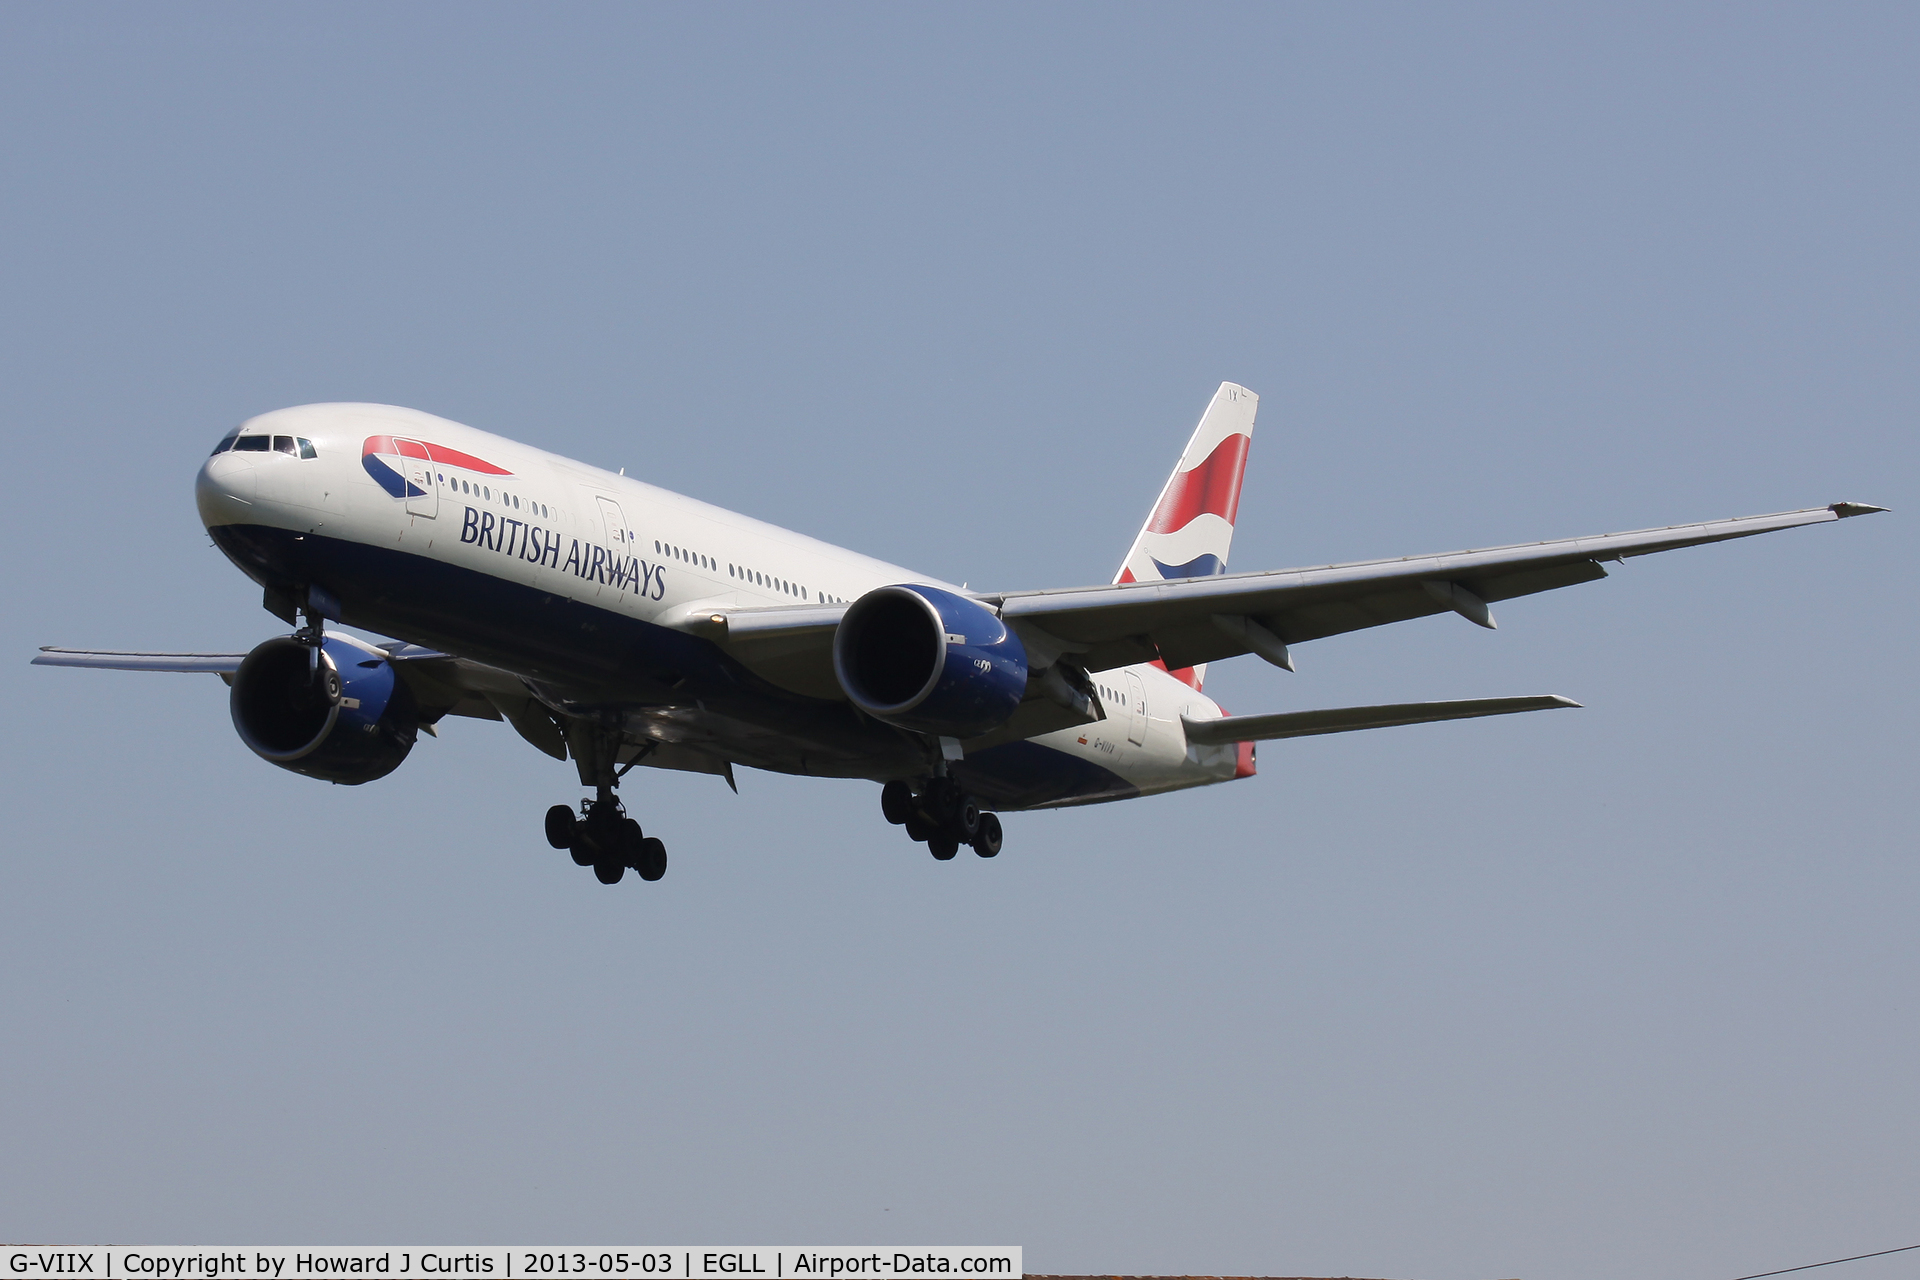 G-VIIX, 1999 Boeing 777-236 C/N 29966, British Airways, on approach to runway 27L.